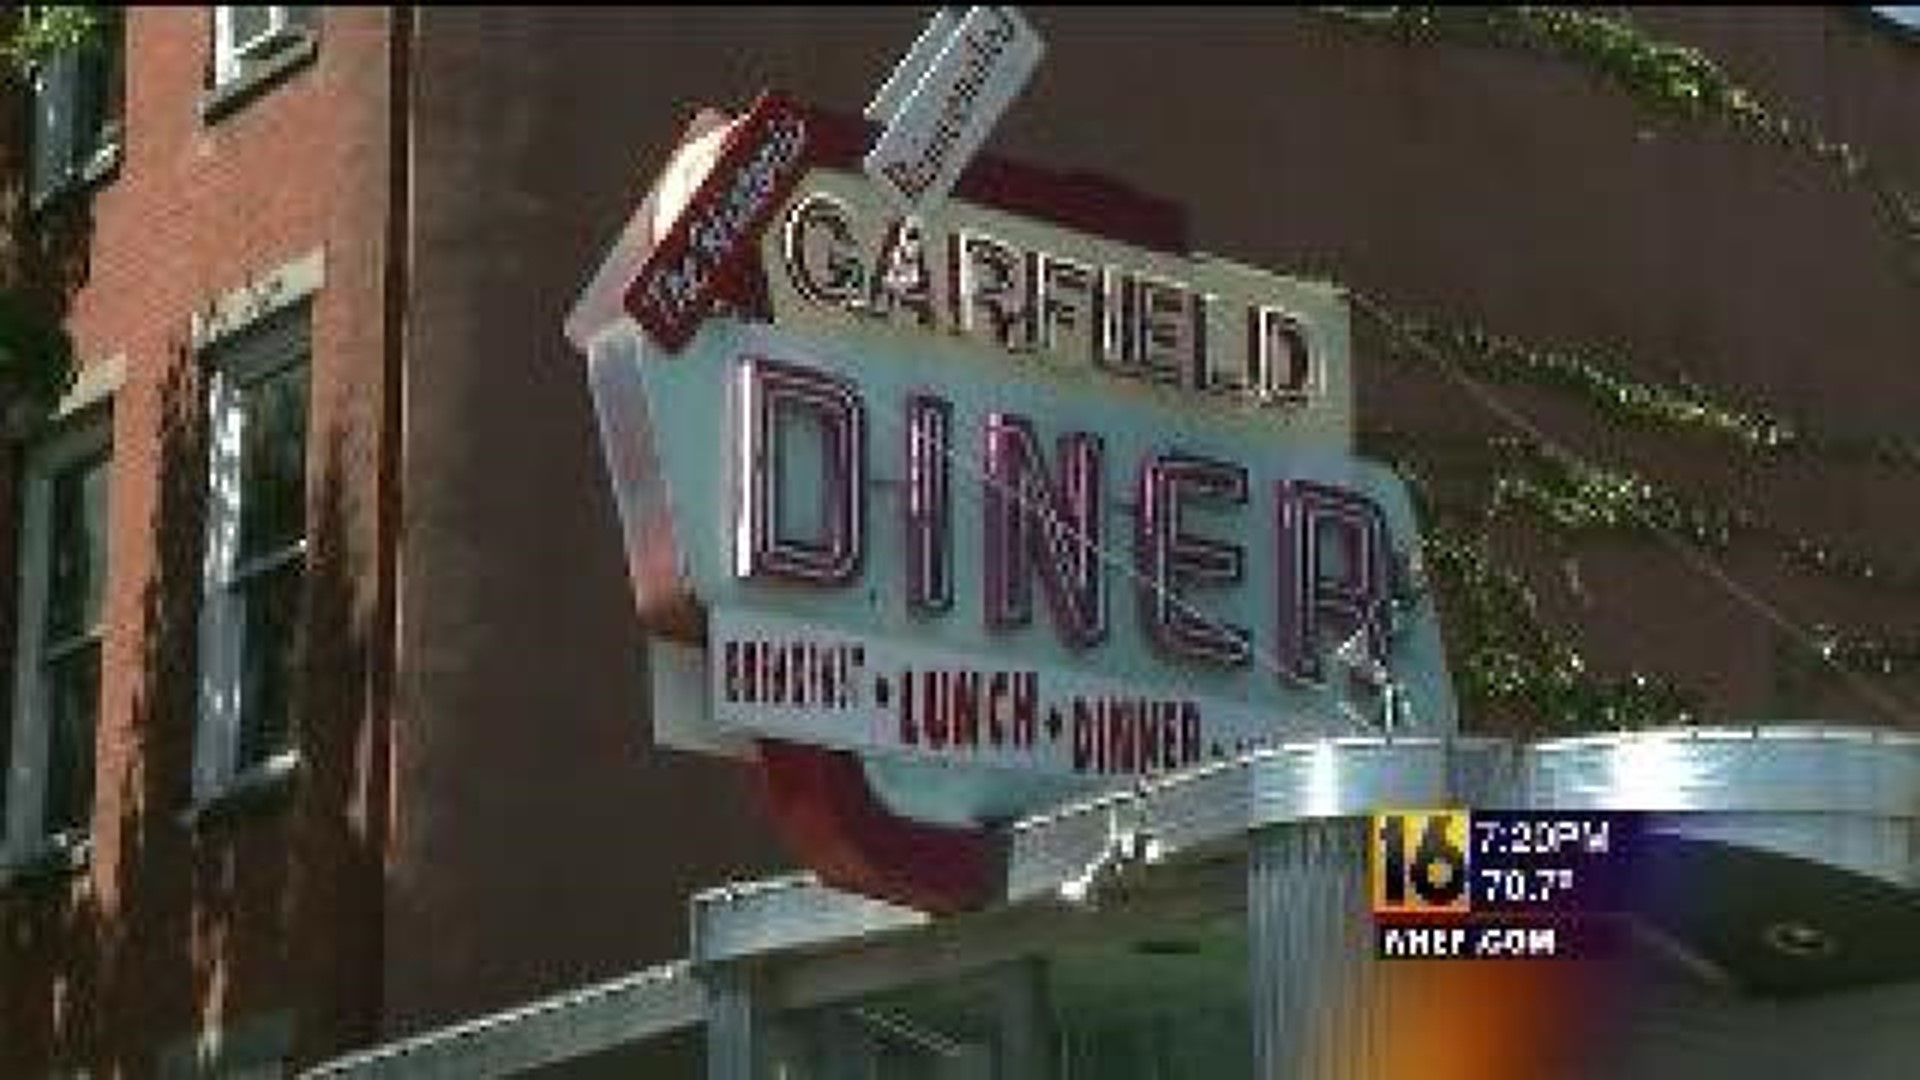 Garfield Diner to Reopen